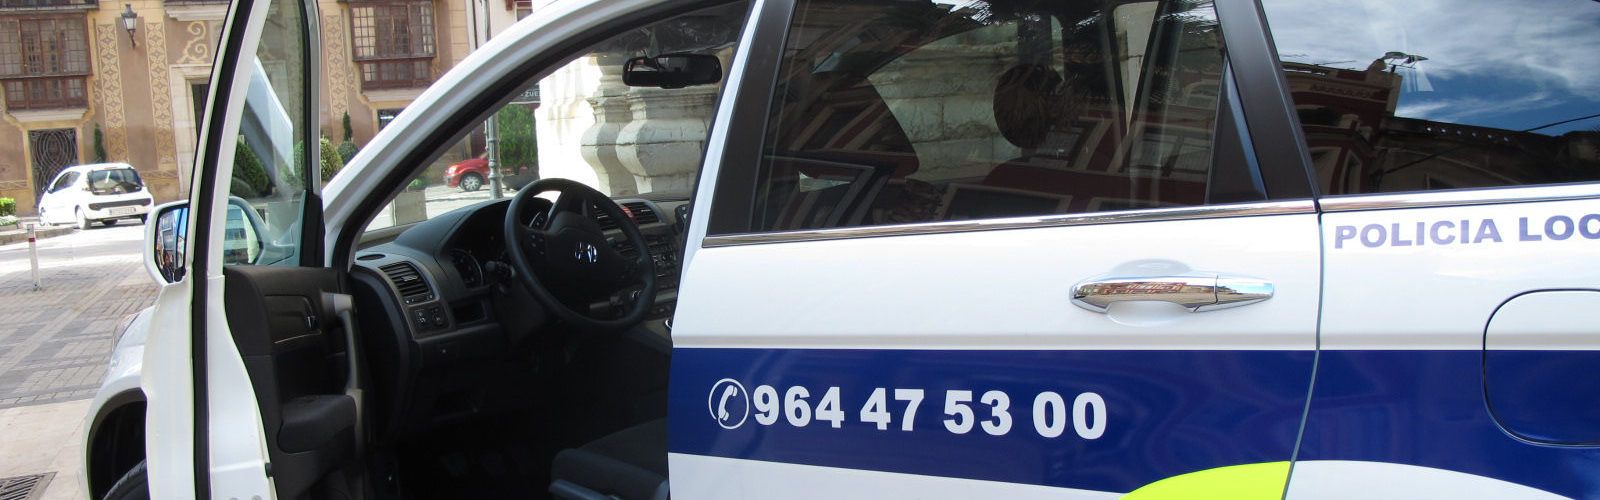 Surt a licitació el subministrament de tres vehicles patrulla per a la Policia Local de Benicarló